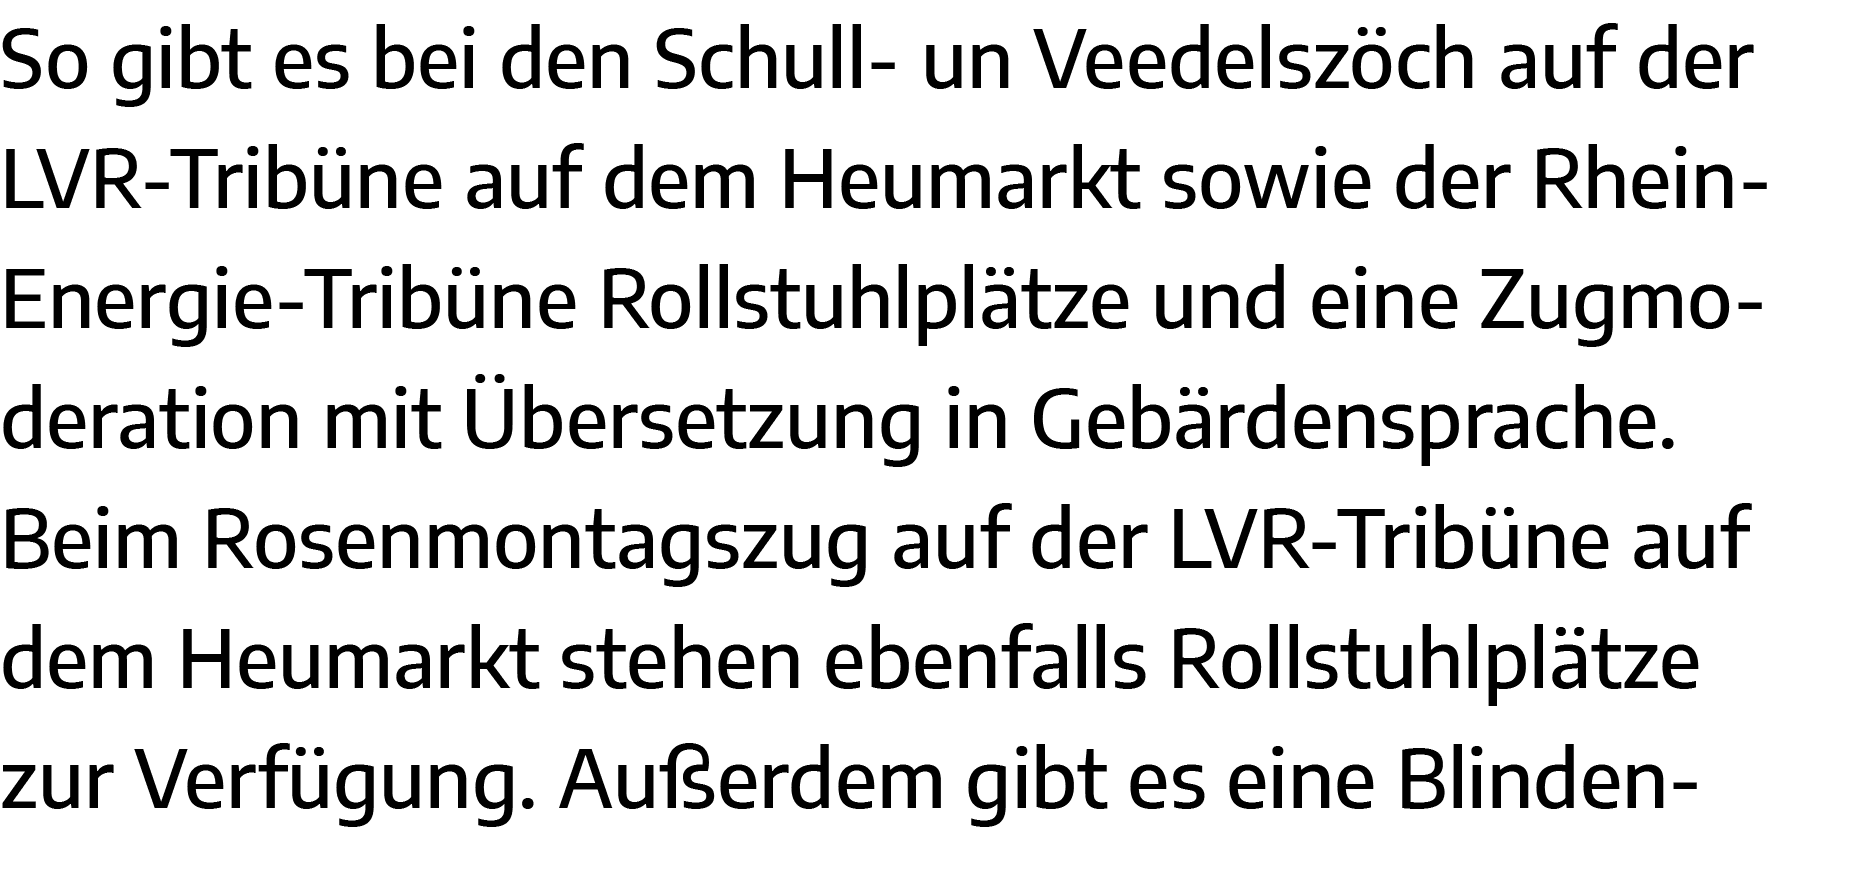 So gibt es bei den Schull- un Veedelszöch auf der LVR-Tribüne auf dem Heumarkt sowie der RheinEnergie-Tribüne Rollstu   